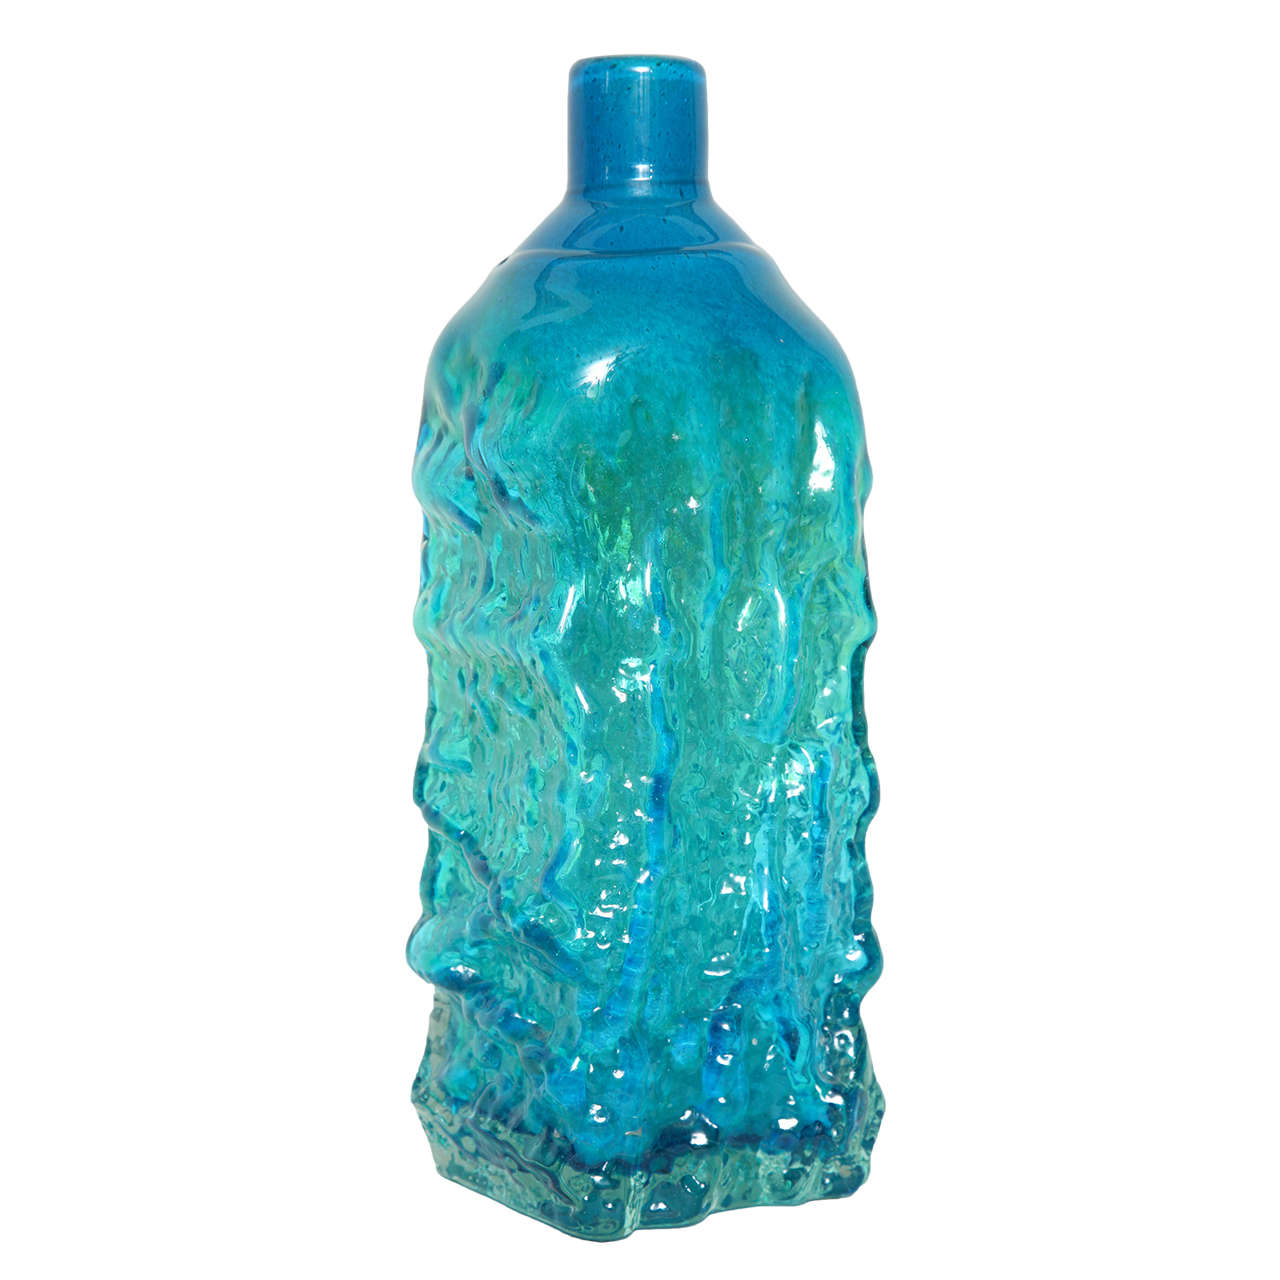 Studio Glass Bottle Vase Designed by Michael Harris